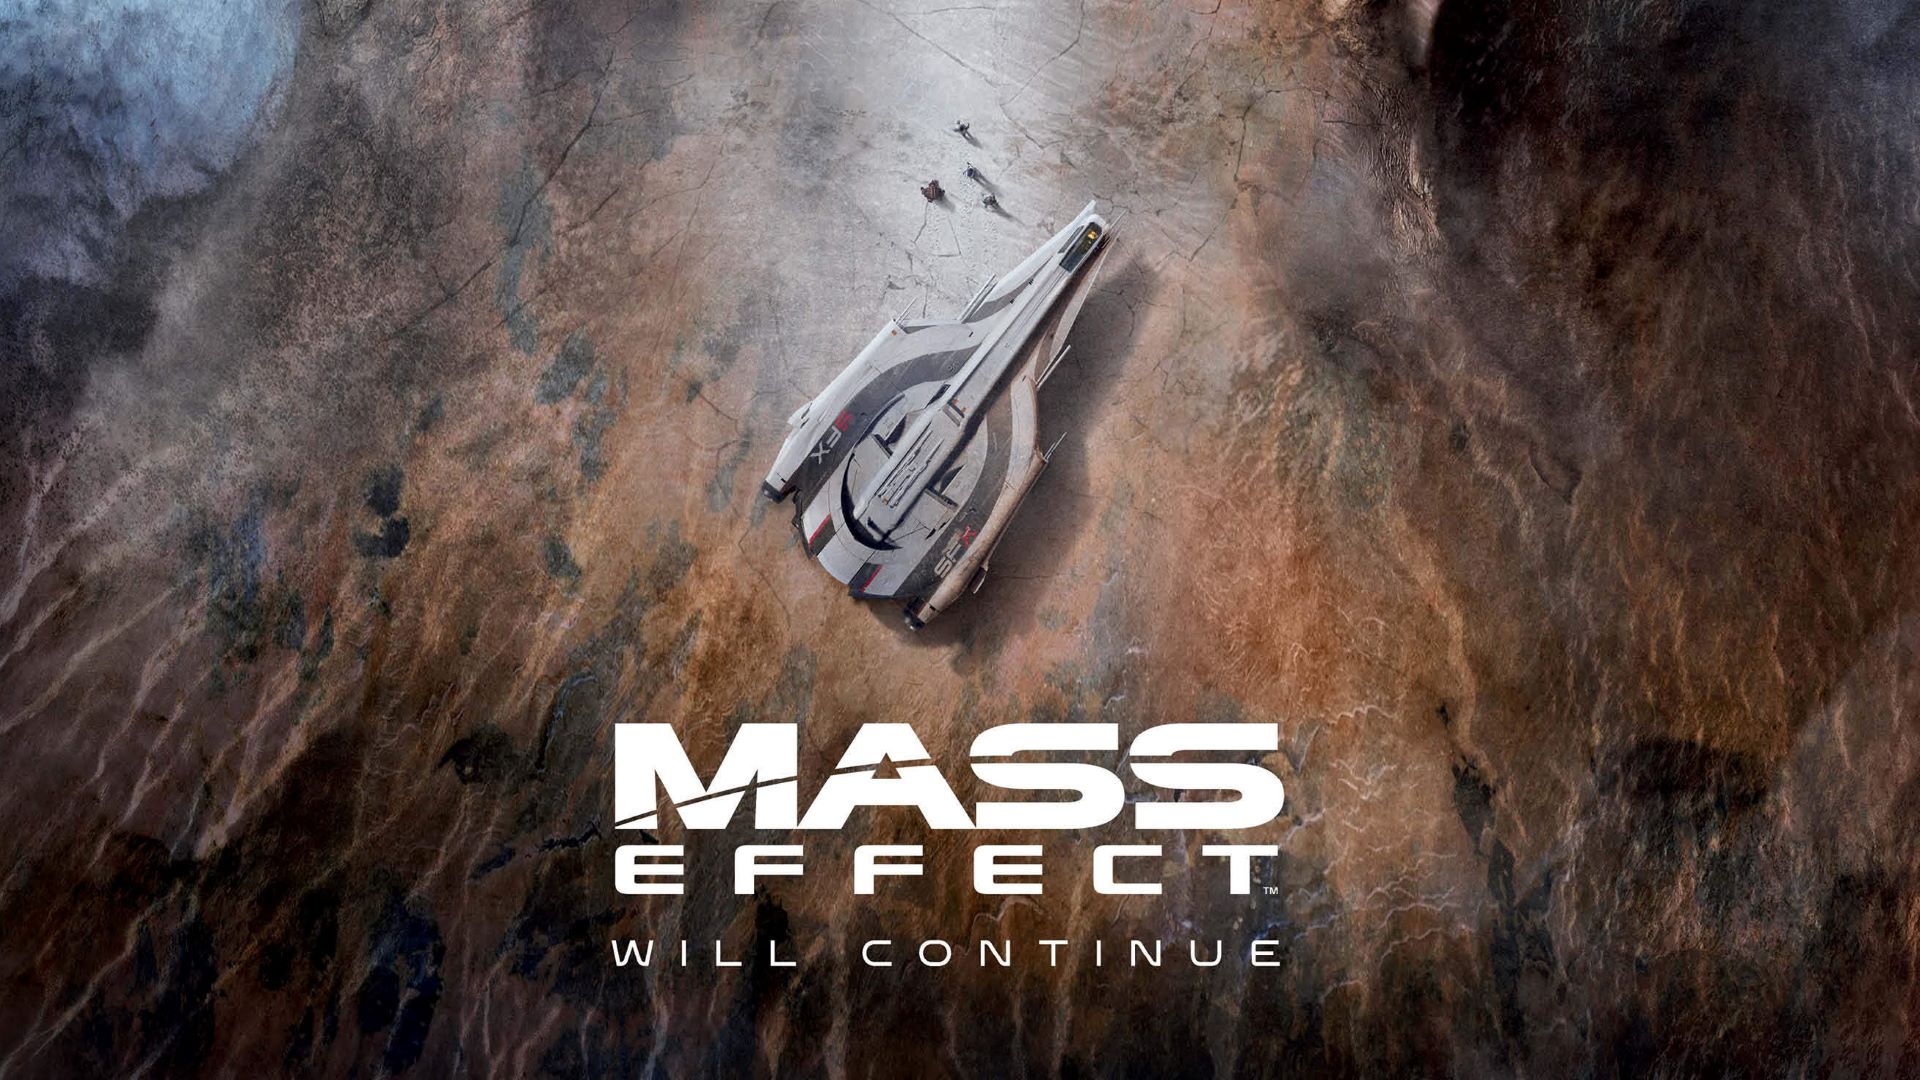 Es scheint, dass Bioware den Spoiler mit dem neuen Mass Effect "verschmolzen" hat